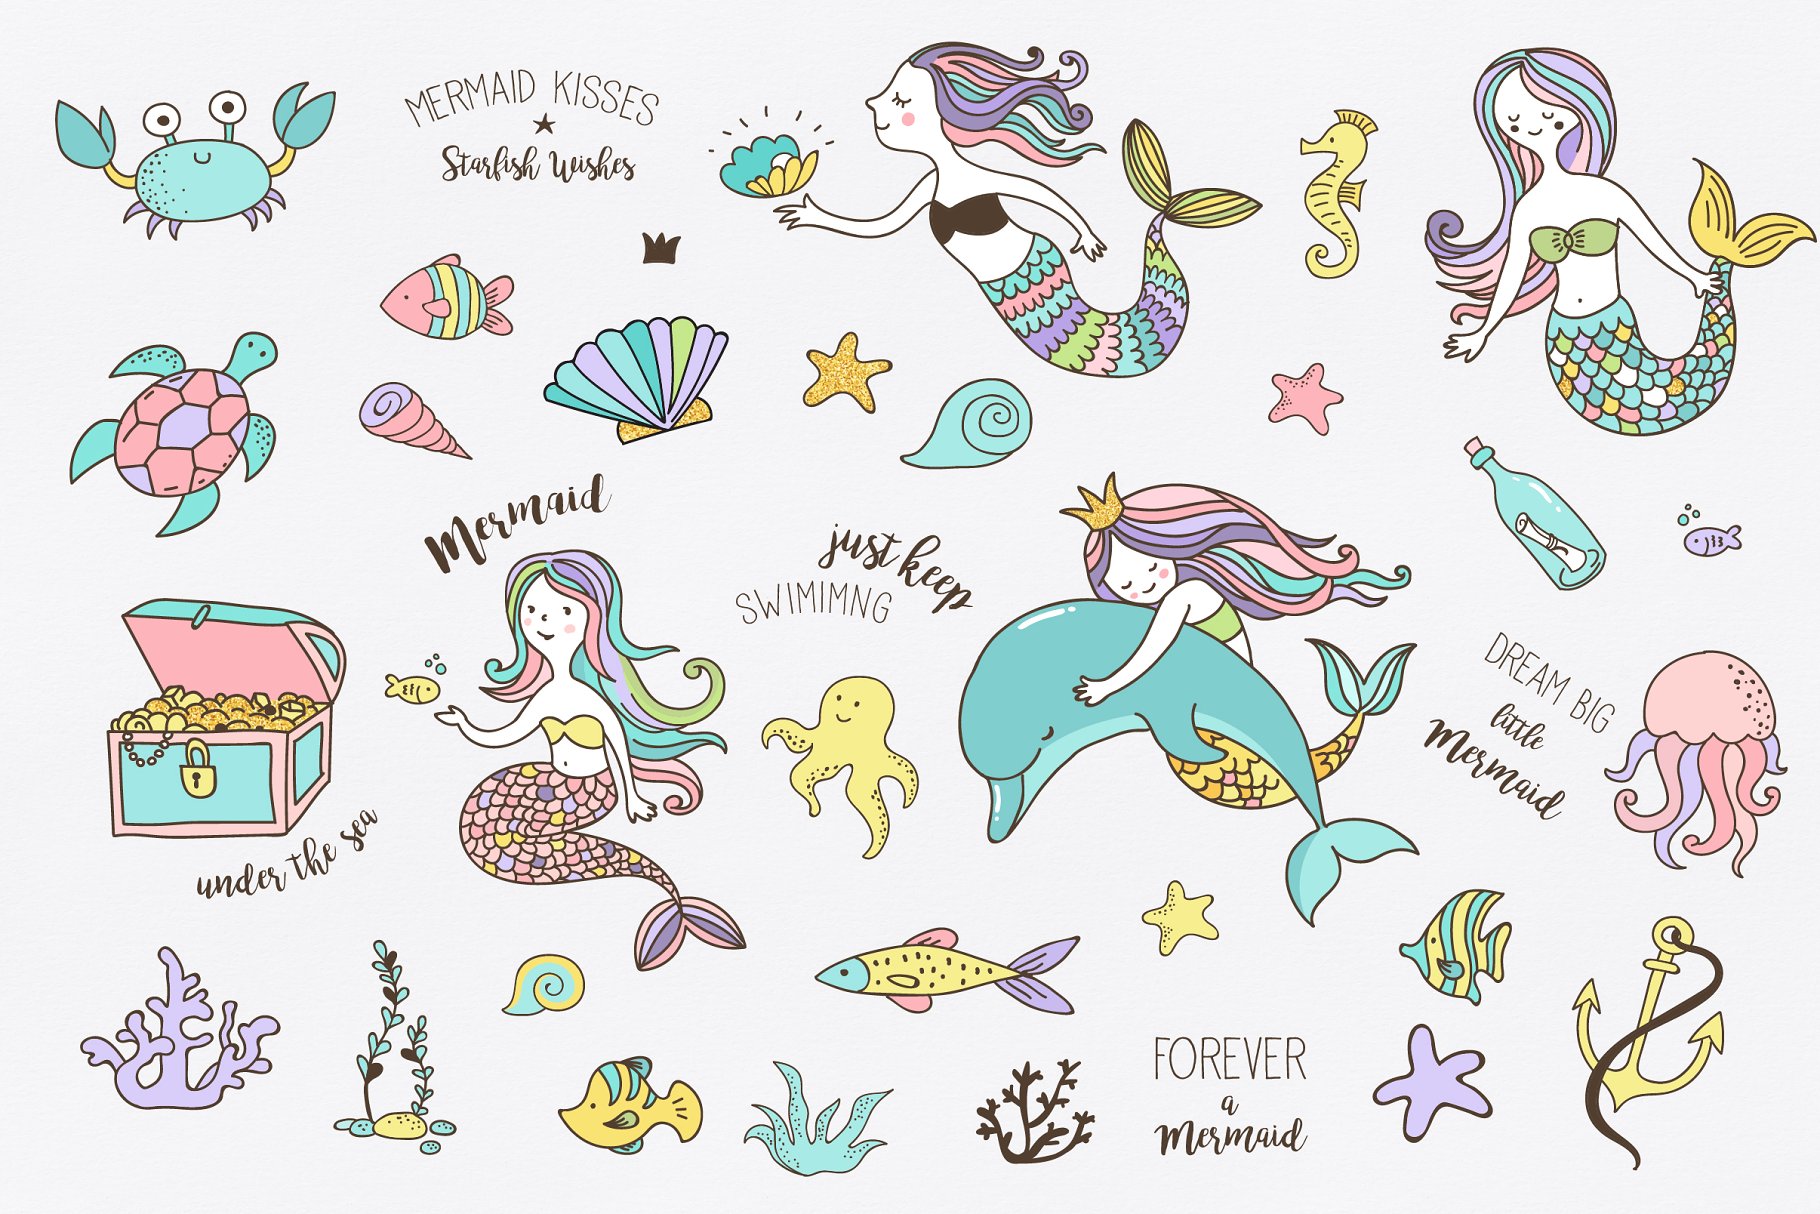 小美人鱼与海洋生物元素及贺卡模板 Little Mermaid – under the sea set插图(1)